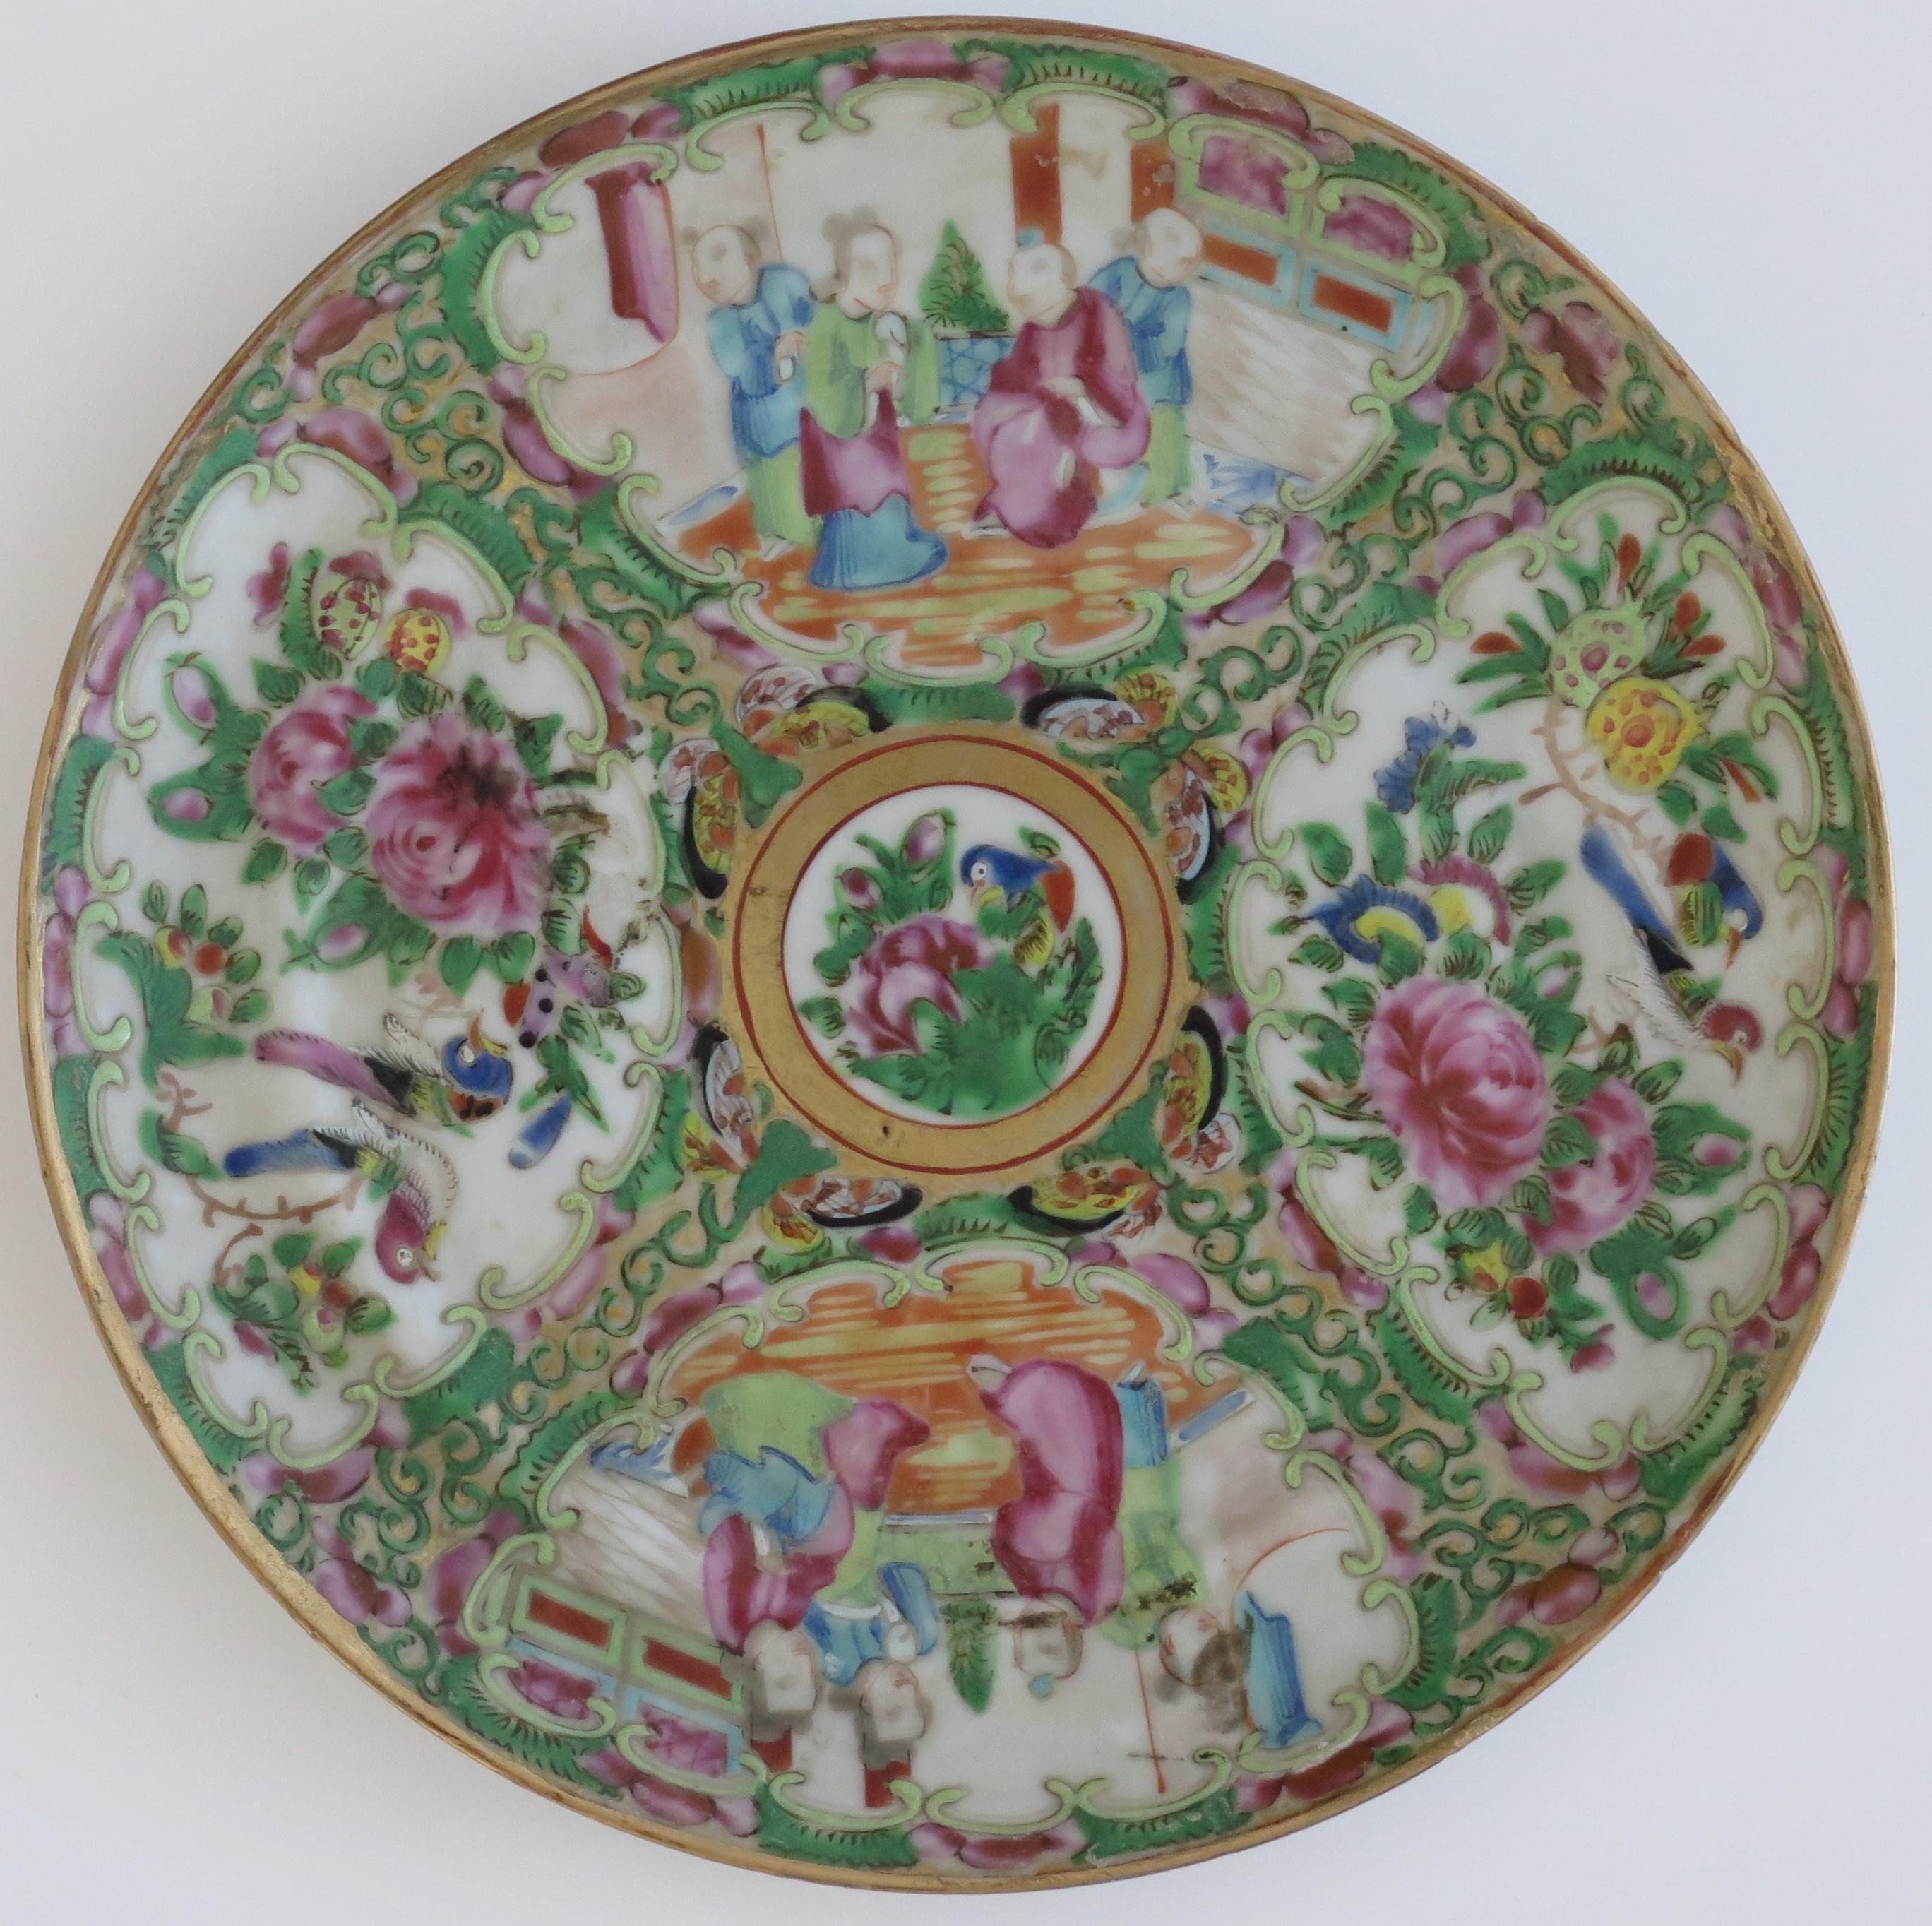 Dies ist eine sehr dekorative chinesische Export, Porzellan, Rose Medaillon Schüssel oder Teller, die wir auf das 19. Jahrhundert, Qing-Dynastie, ca. 1875.

Es ist handbemalt in der Kanton oder chinesischen Export, Rose Medaillon Dekoration mit vier